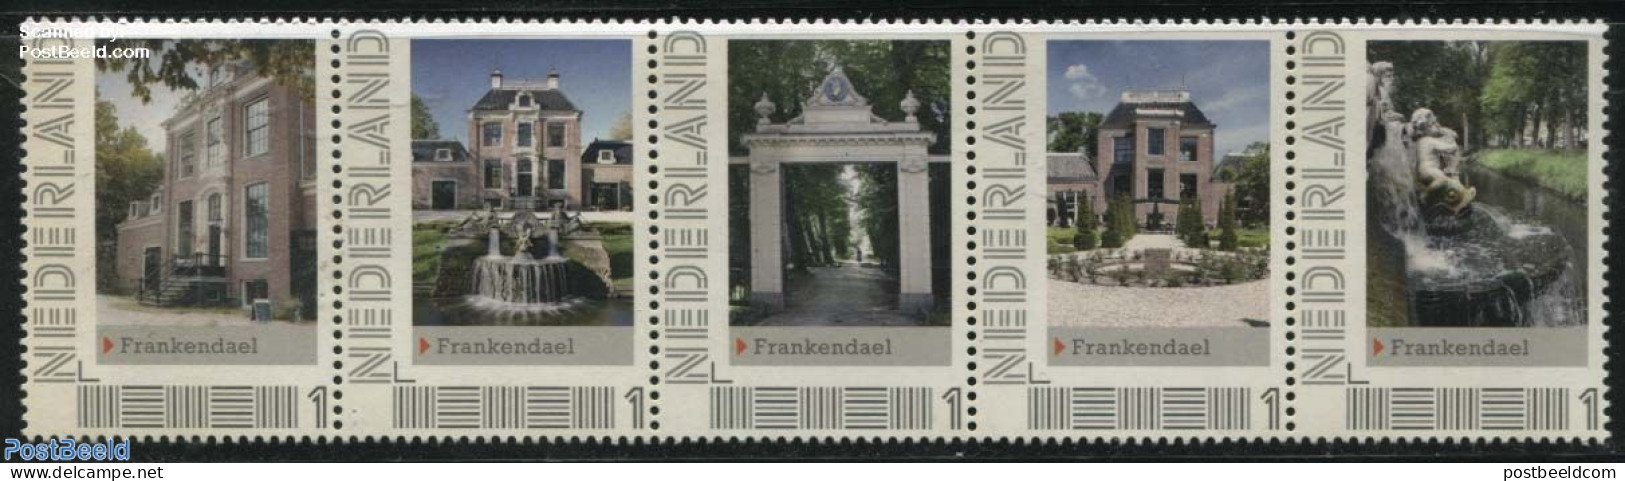 Netherlands - Personal Stamps TNT/PNL 2012 Frankendael 5v [::::], Mint NH, Art - Castles & Fortifications - Schlösser U. Burgen